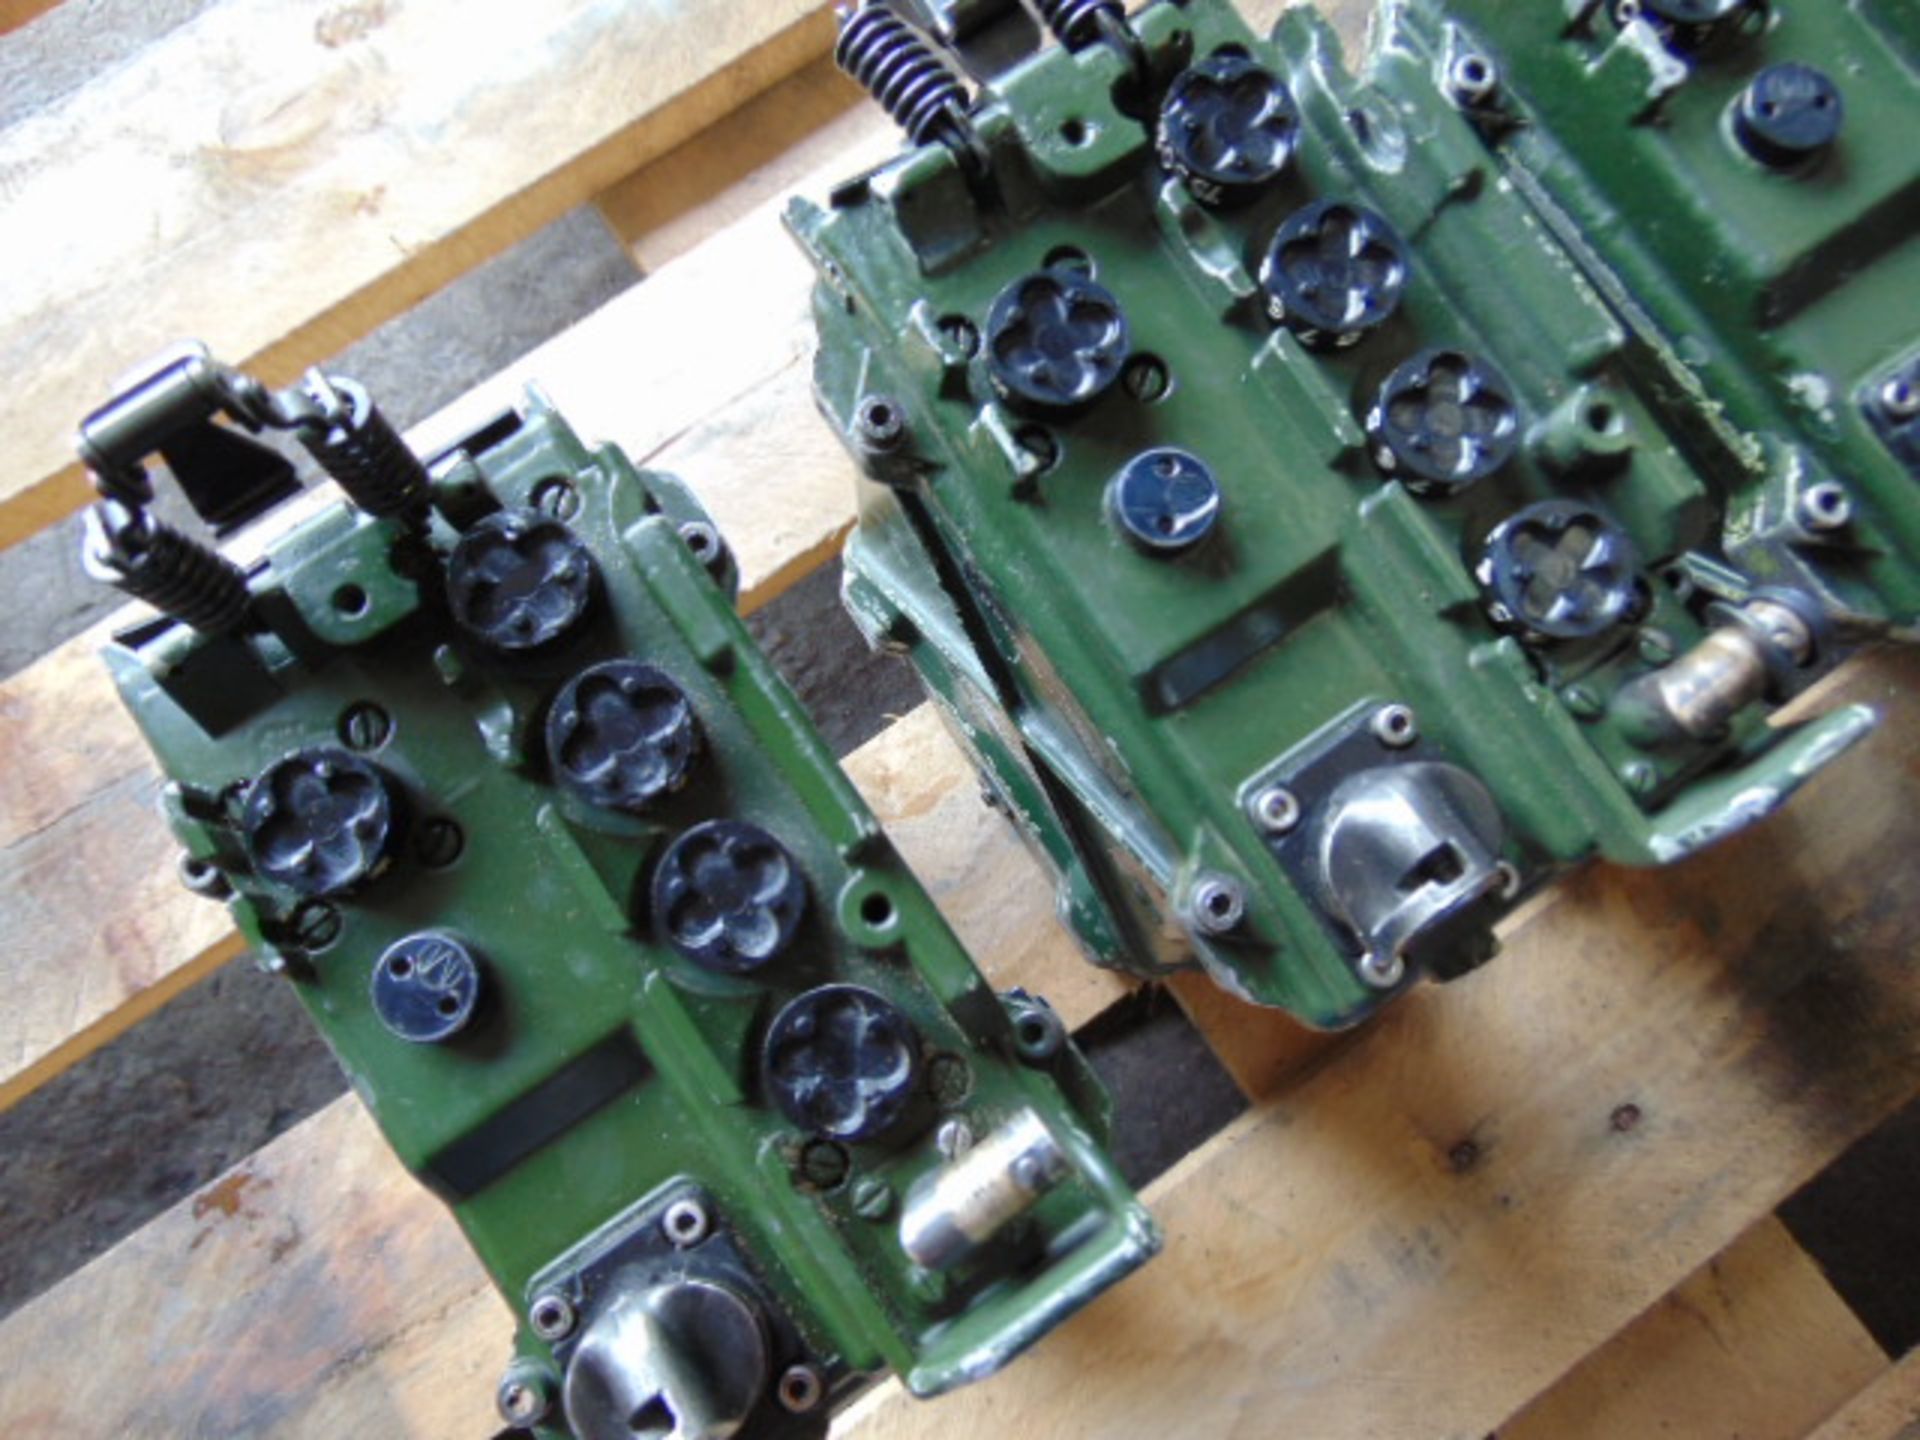 4 x Clansman RT- 351 Transmitter Receivers - Image 4 of 9